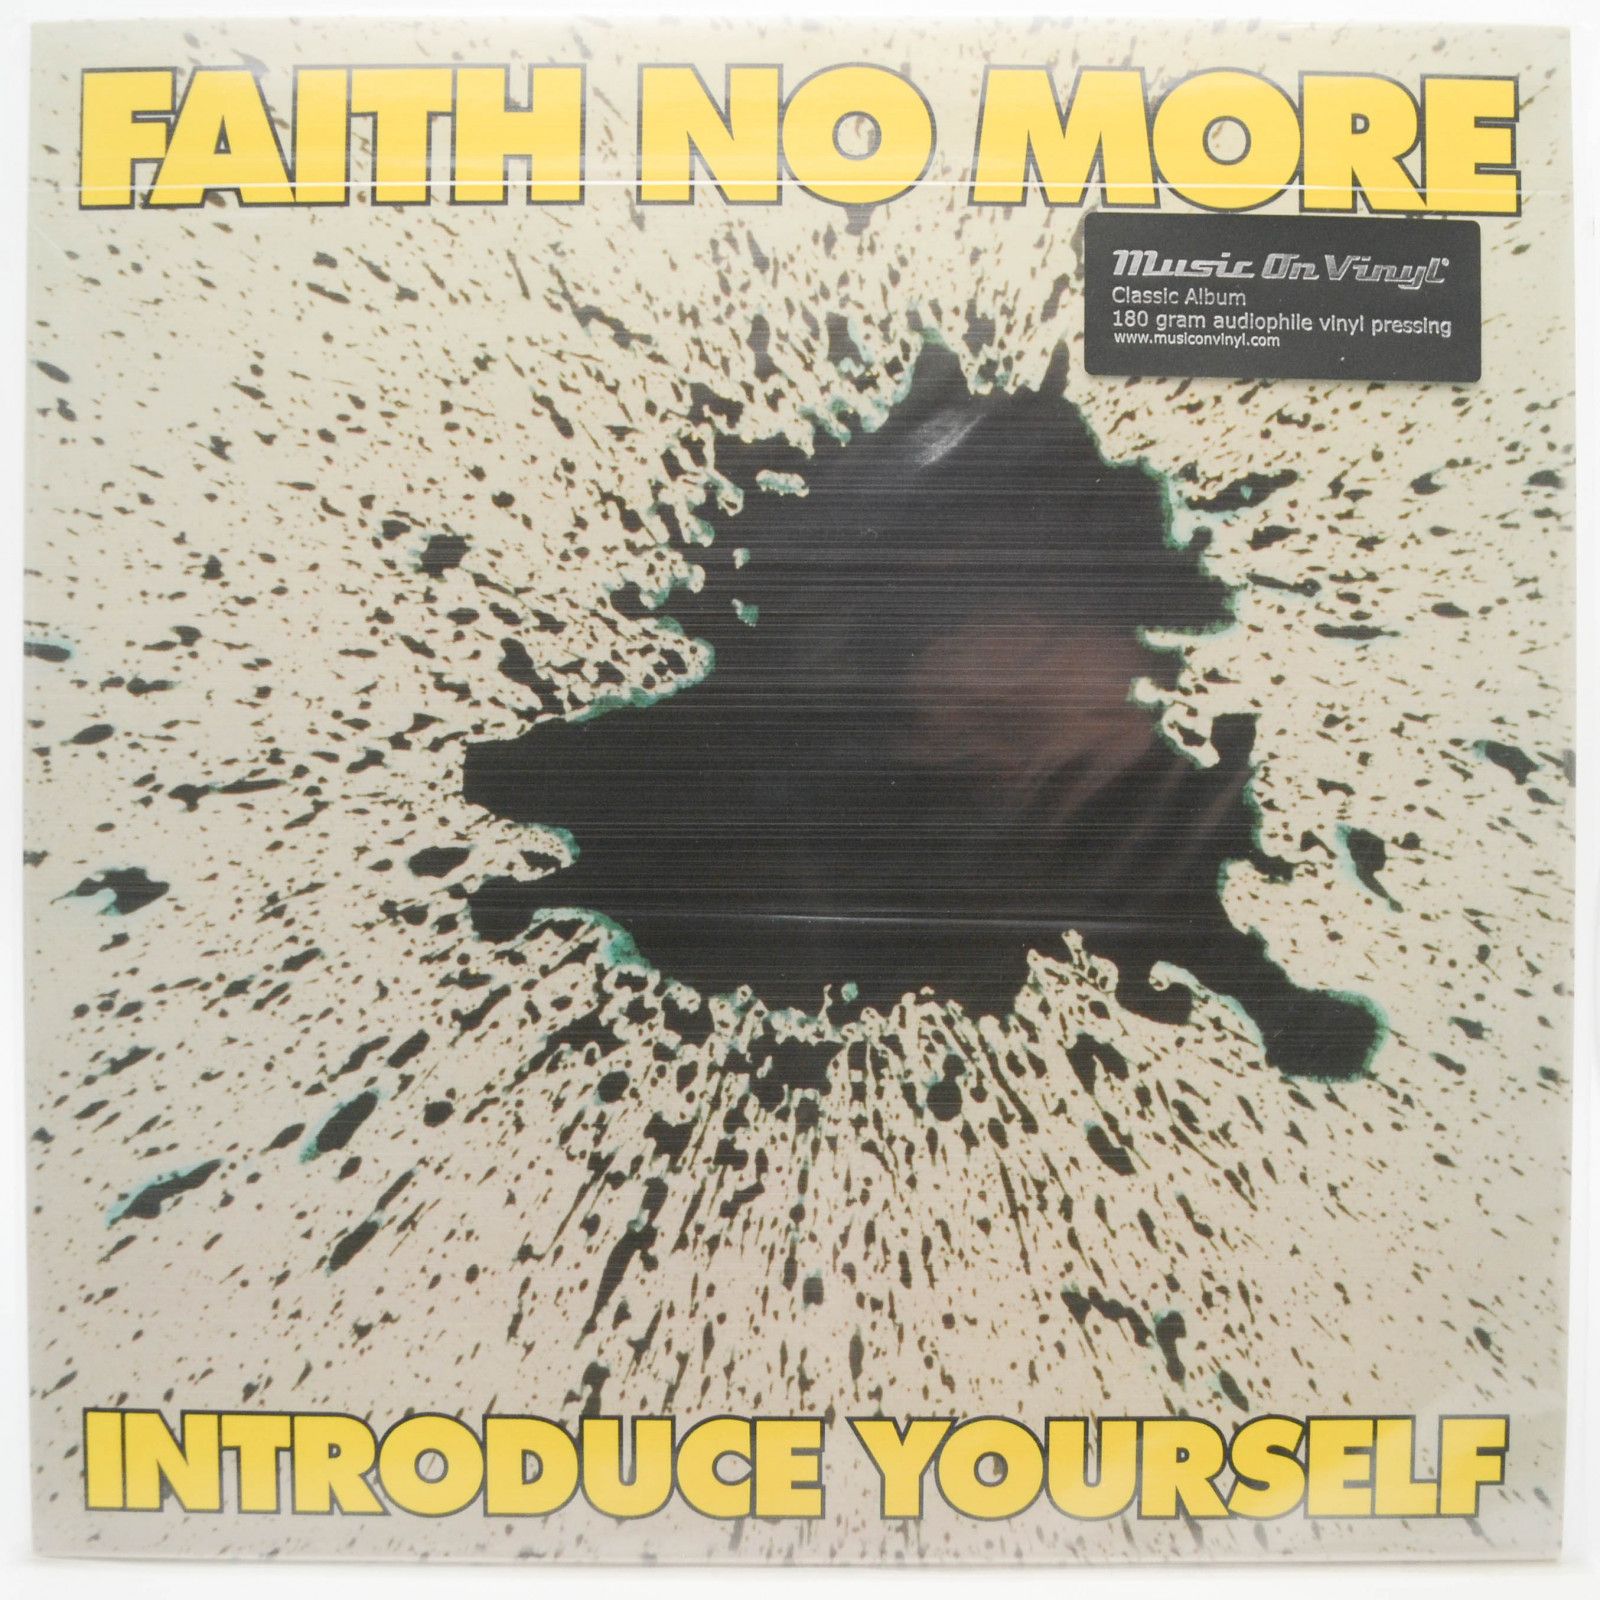 Faith No More — Introduce Yourself, 1987